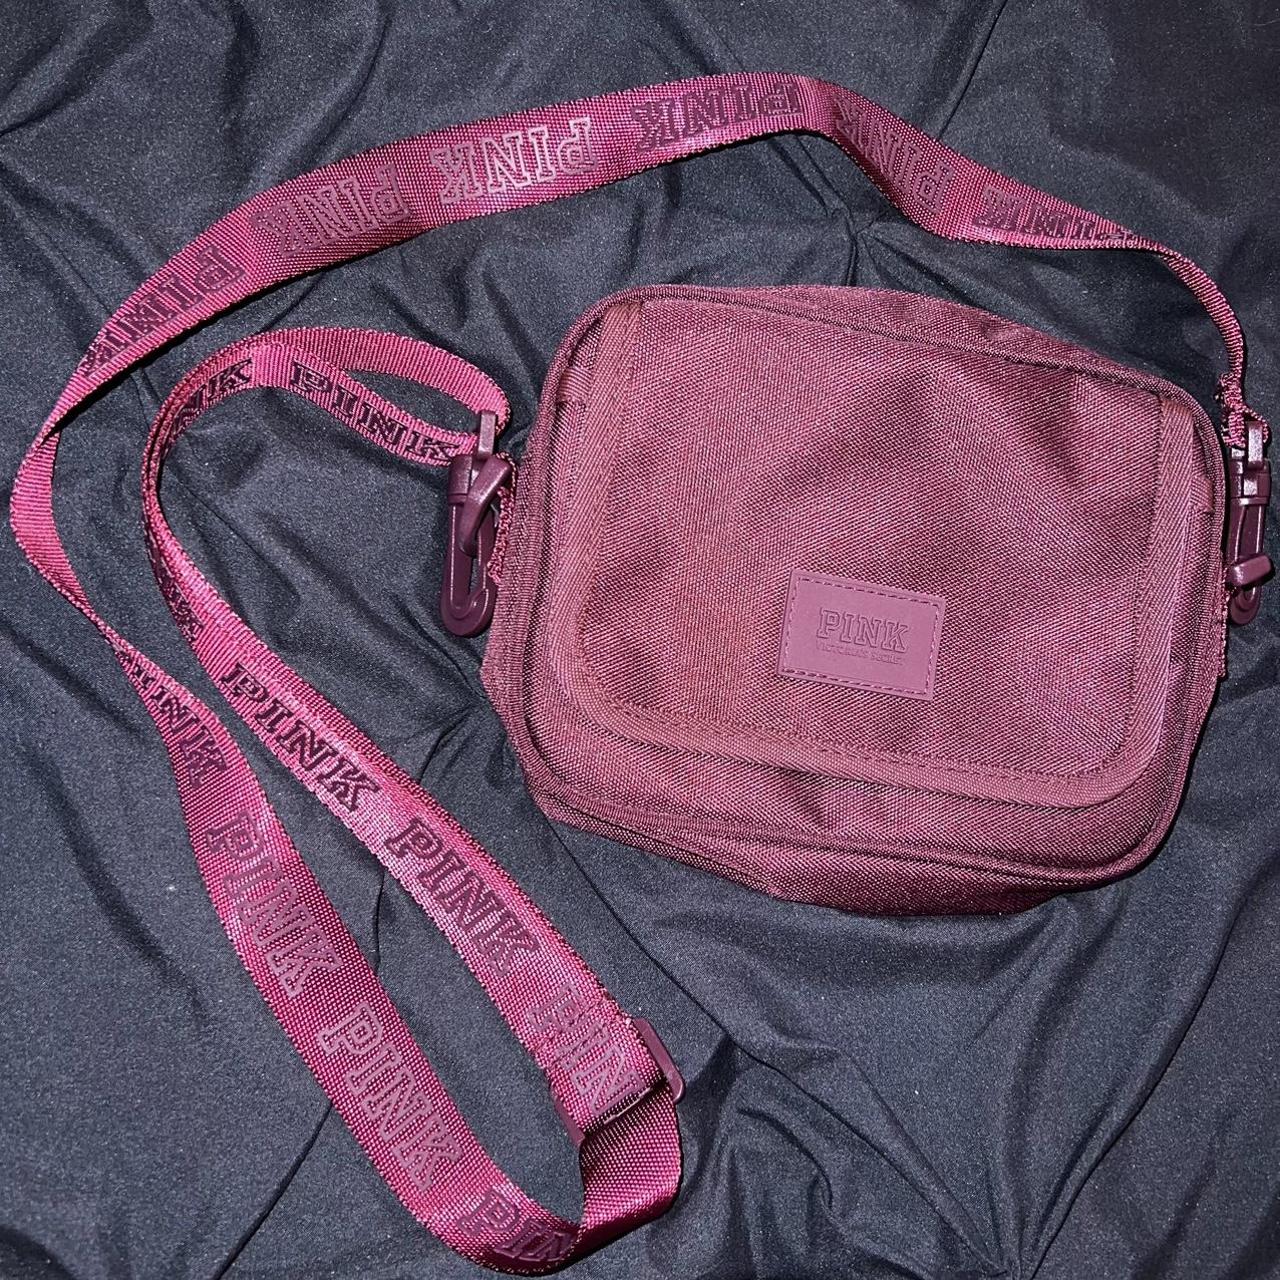 Victoria's Secret Bags & Handbags for Women for sale